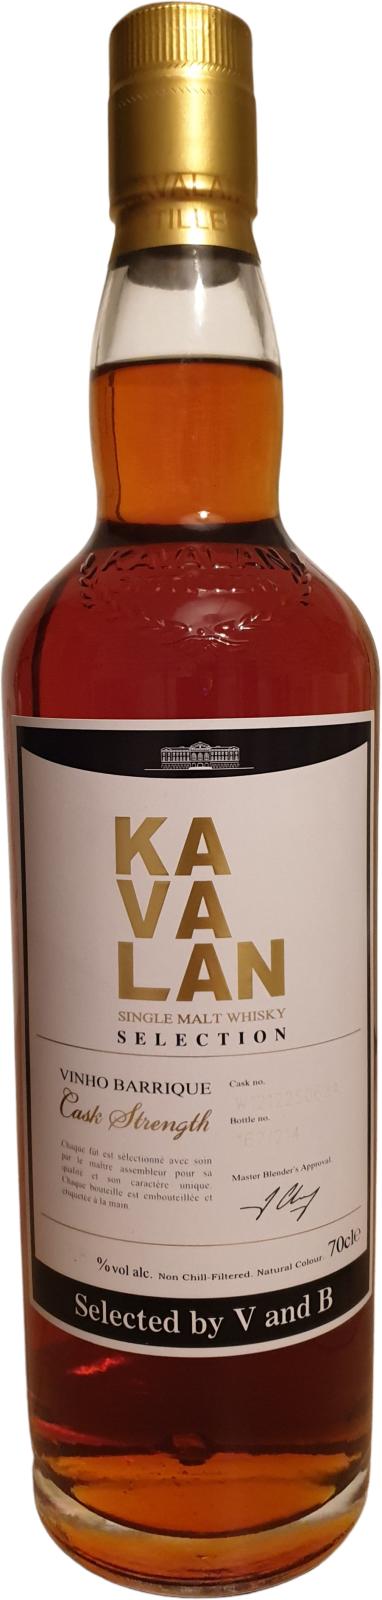 Kavalan Selection wine Barrique wine Barrique V and B 57.8% 700ml